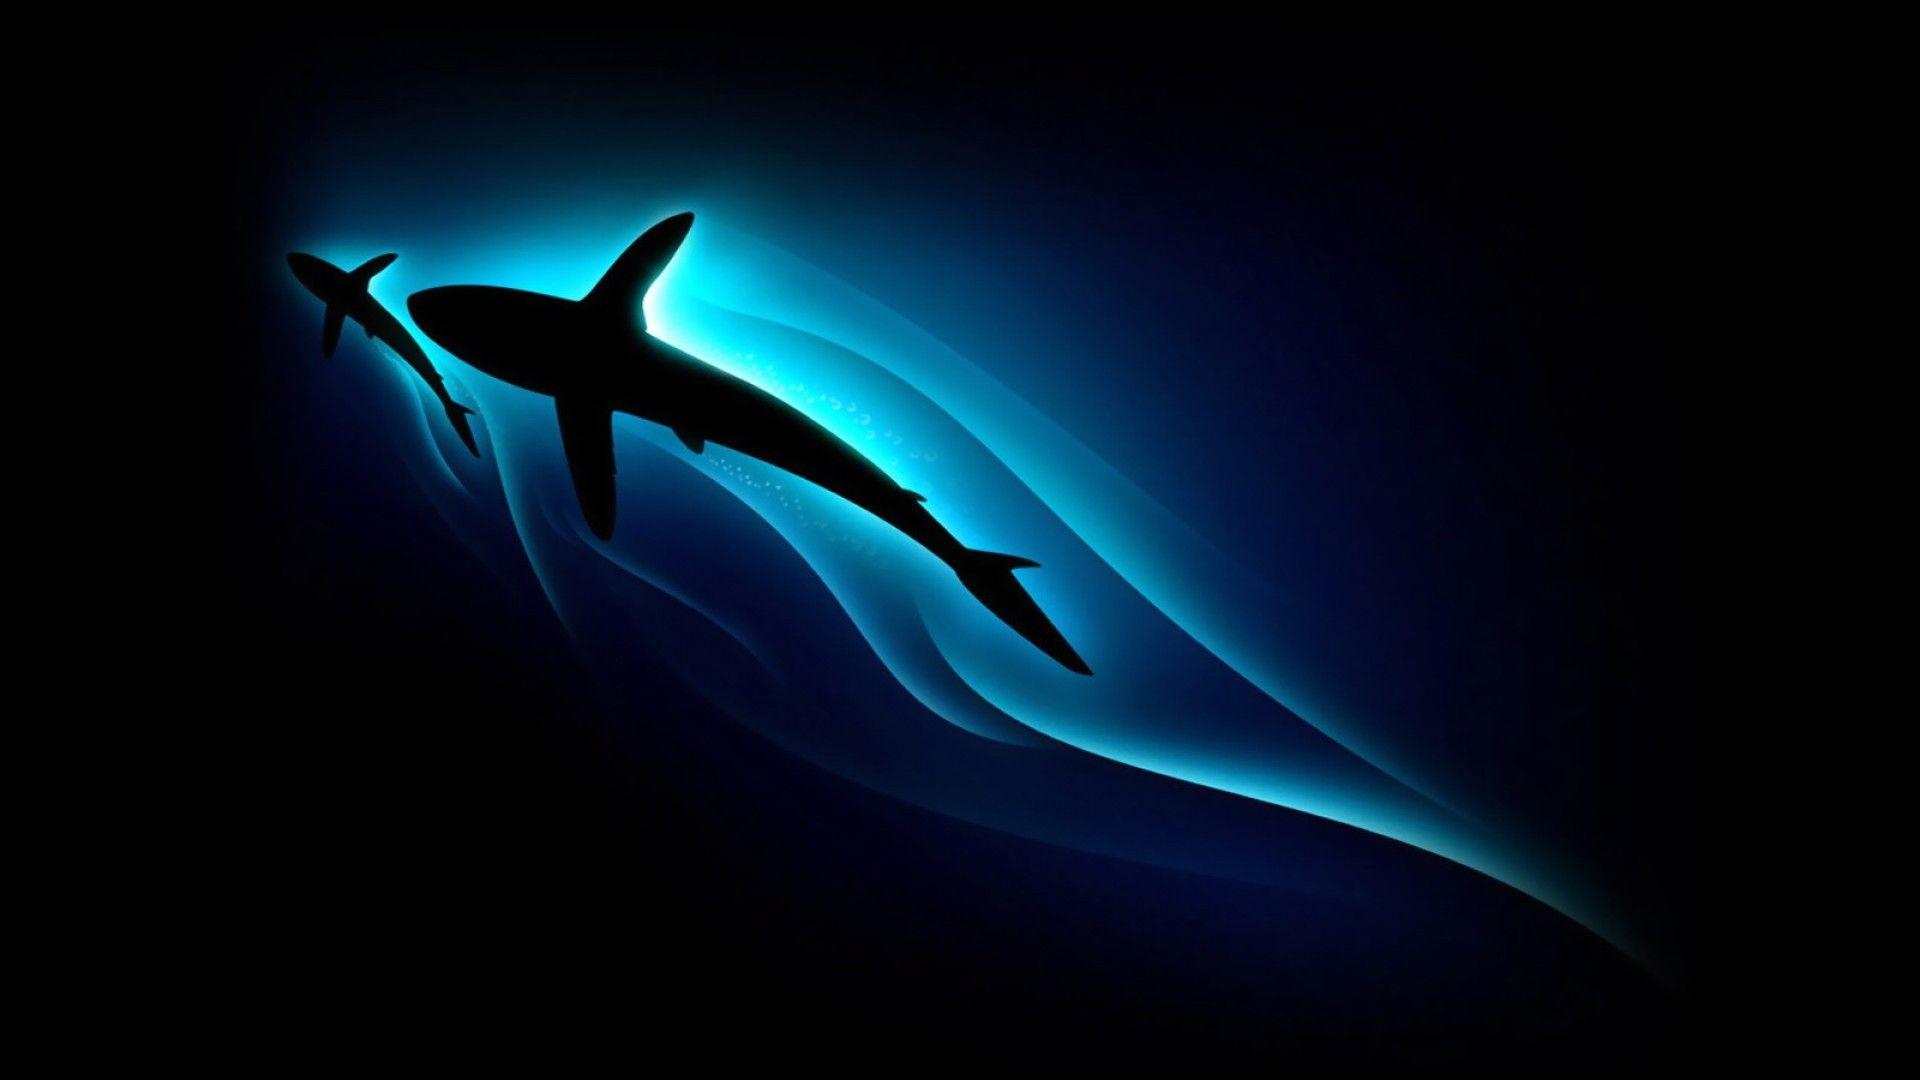 Hình ảnh Thiết Kế Logo Cá Mập Esport Chơi Game Thiết Kế Logo Biểu Tượng Cá  Mập PNG , Cá Mập, Dấu Hiệu Biểu Tượng, Biểu Tượng Cá Mập PNG và Vector